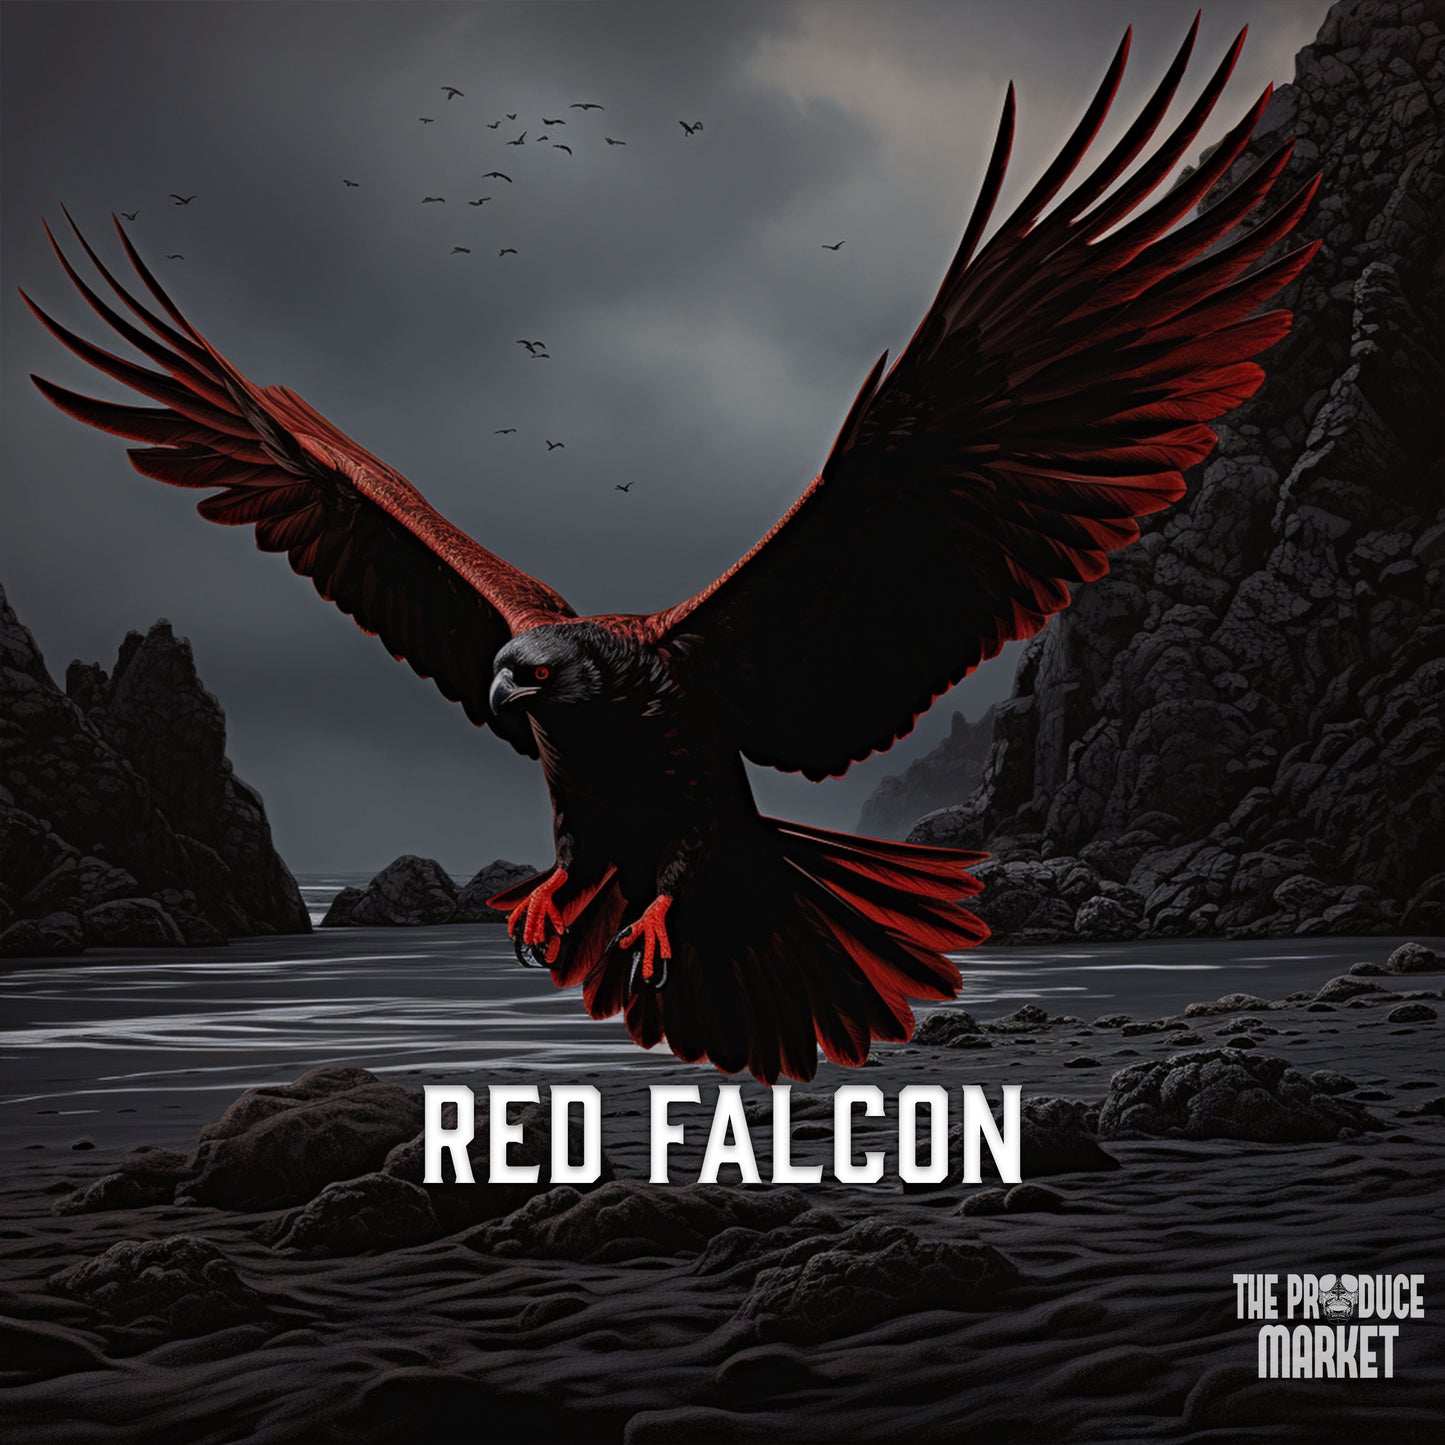 Red Falcon